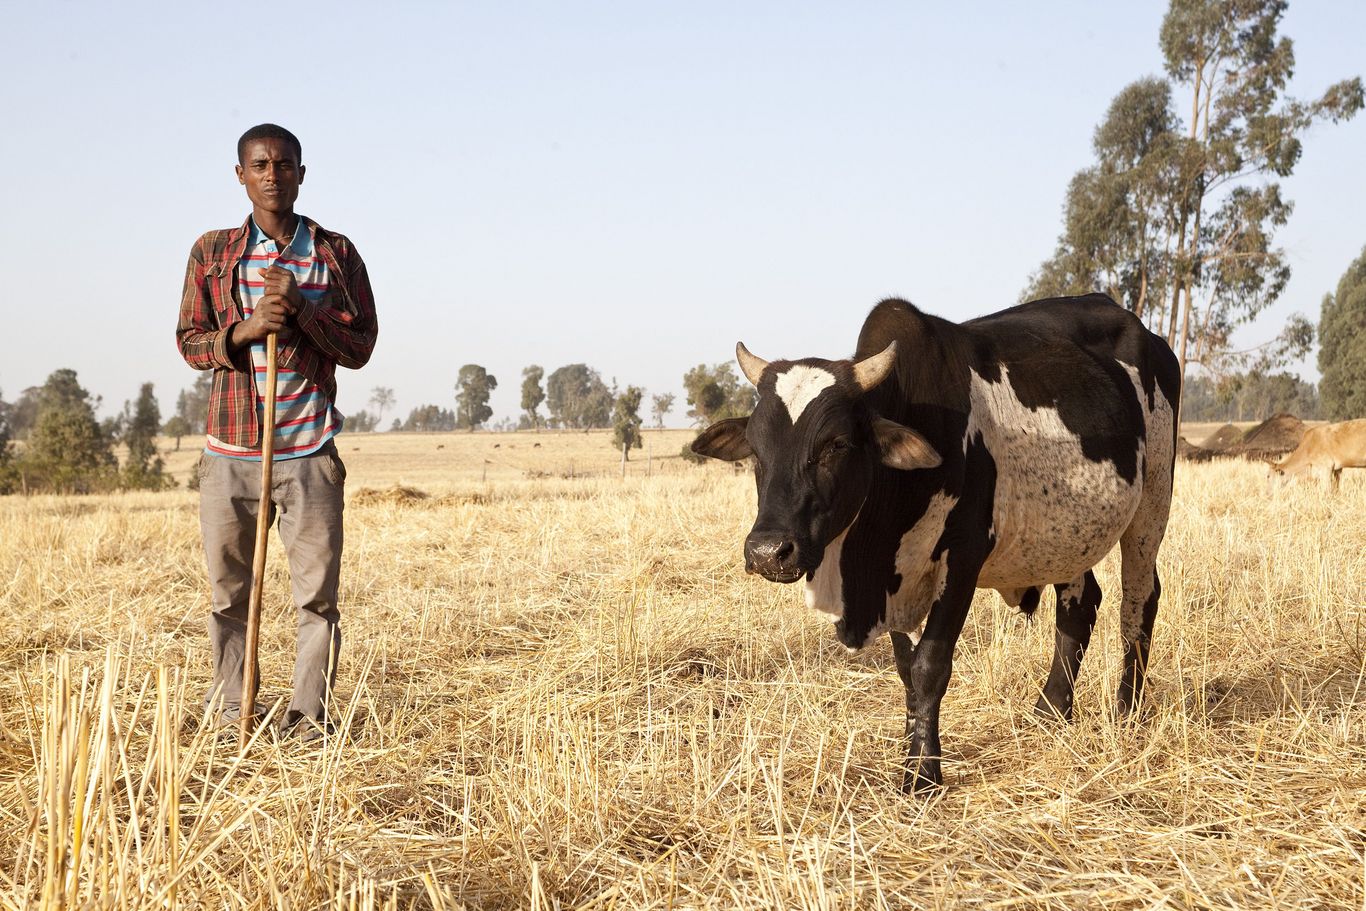 eine trockene Graslandschaft auf der ein Mann mit einem Stock neben einer schwarz-weiß gefleckten Kuh steht